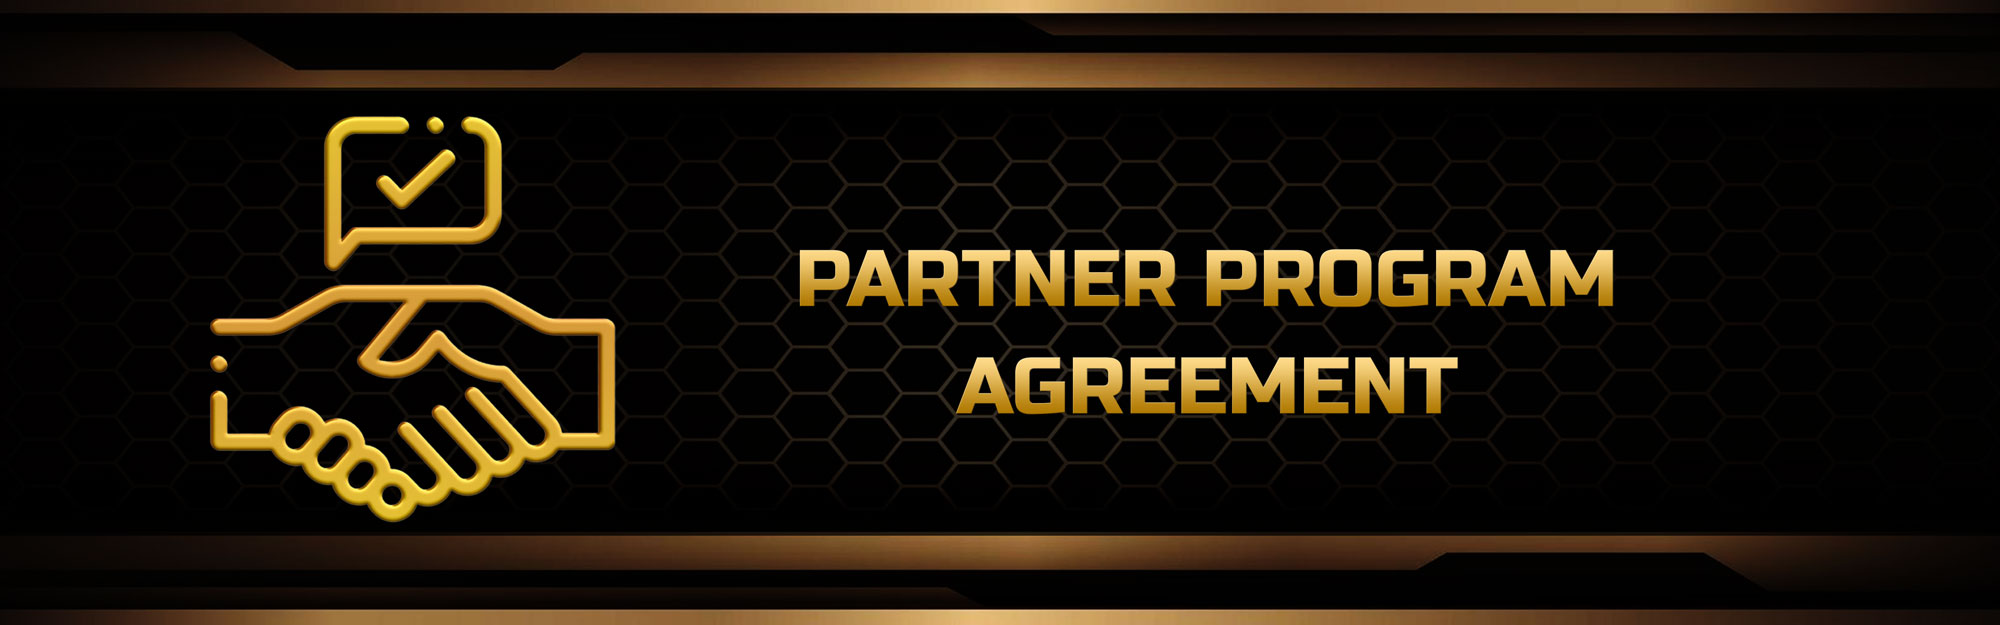 AceHigh Poker Partner Program Agreement 